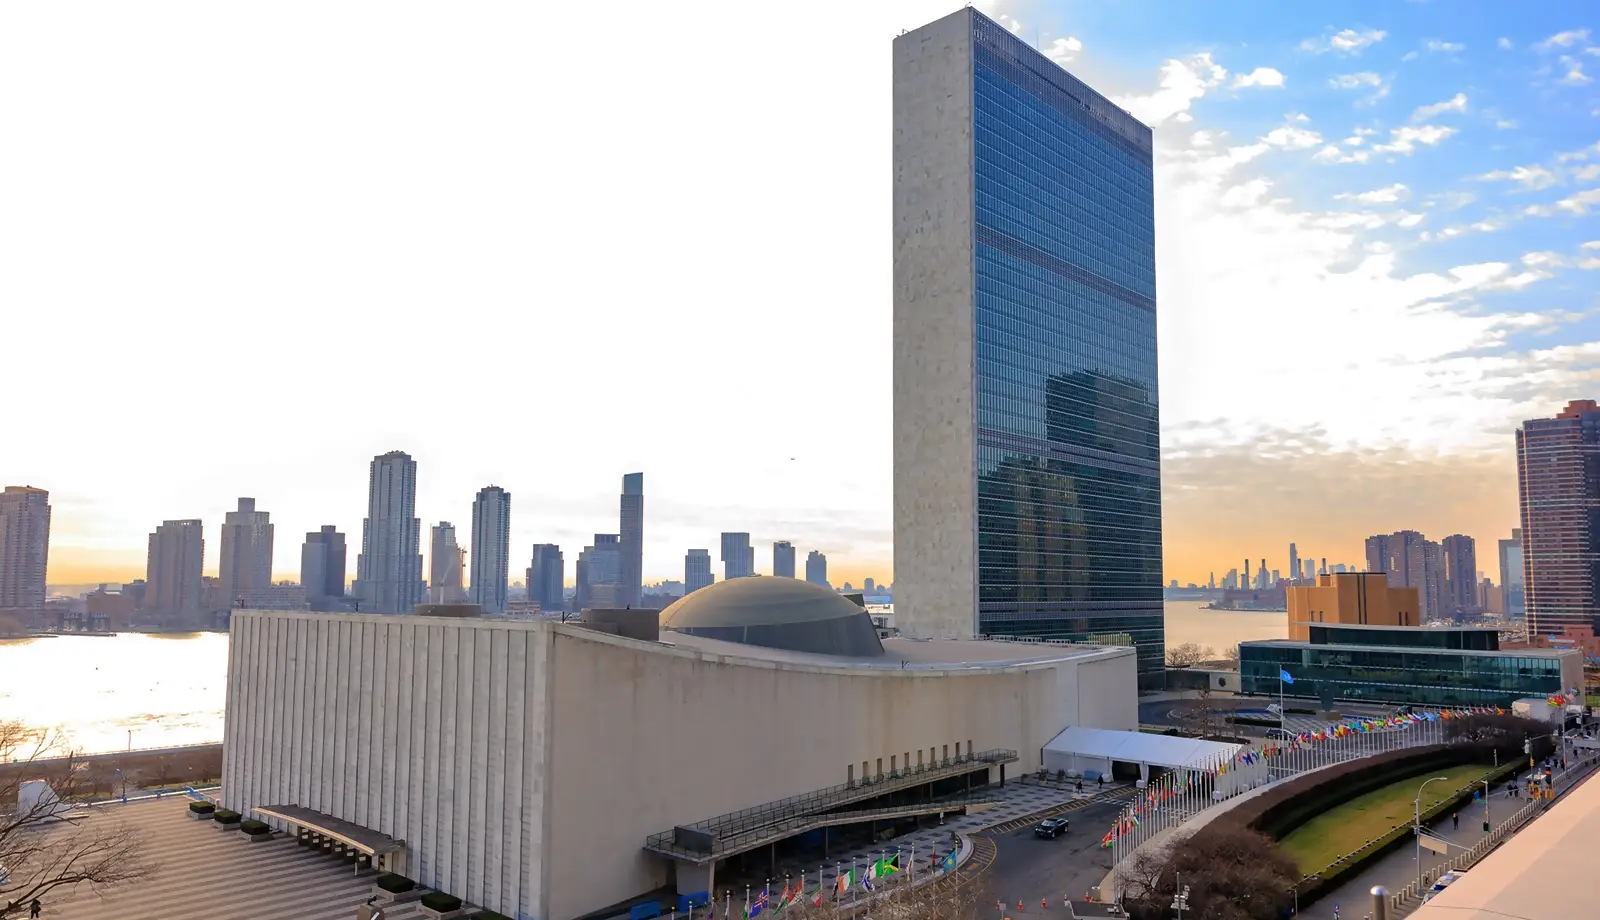 Khám phá Trụ sở Liên Hợp Quốc - Trung tâm của hòa bình và hợp tác quốc tế